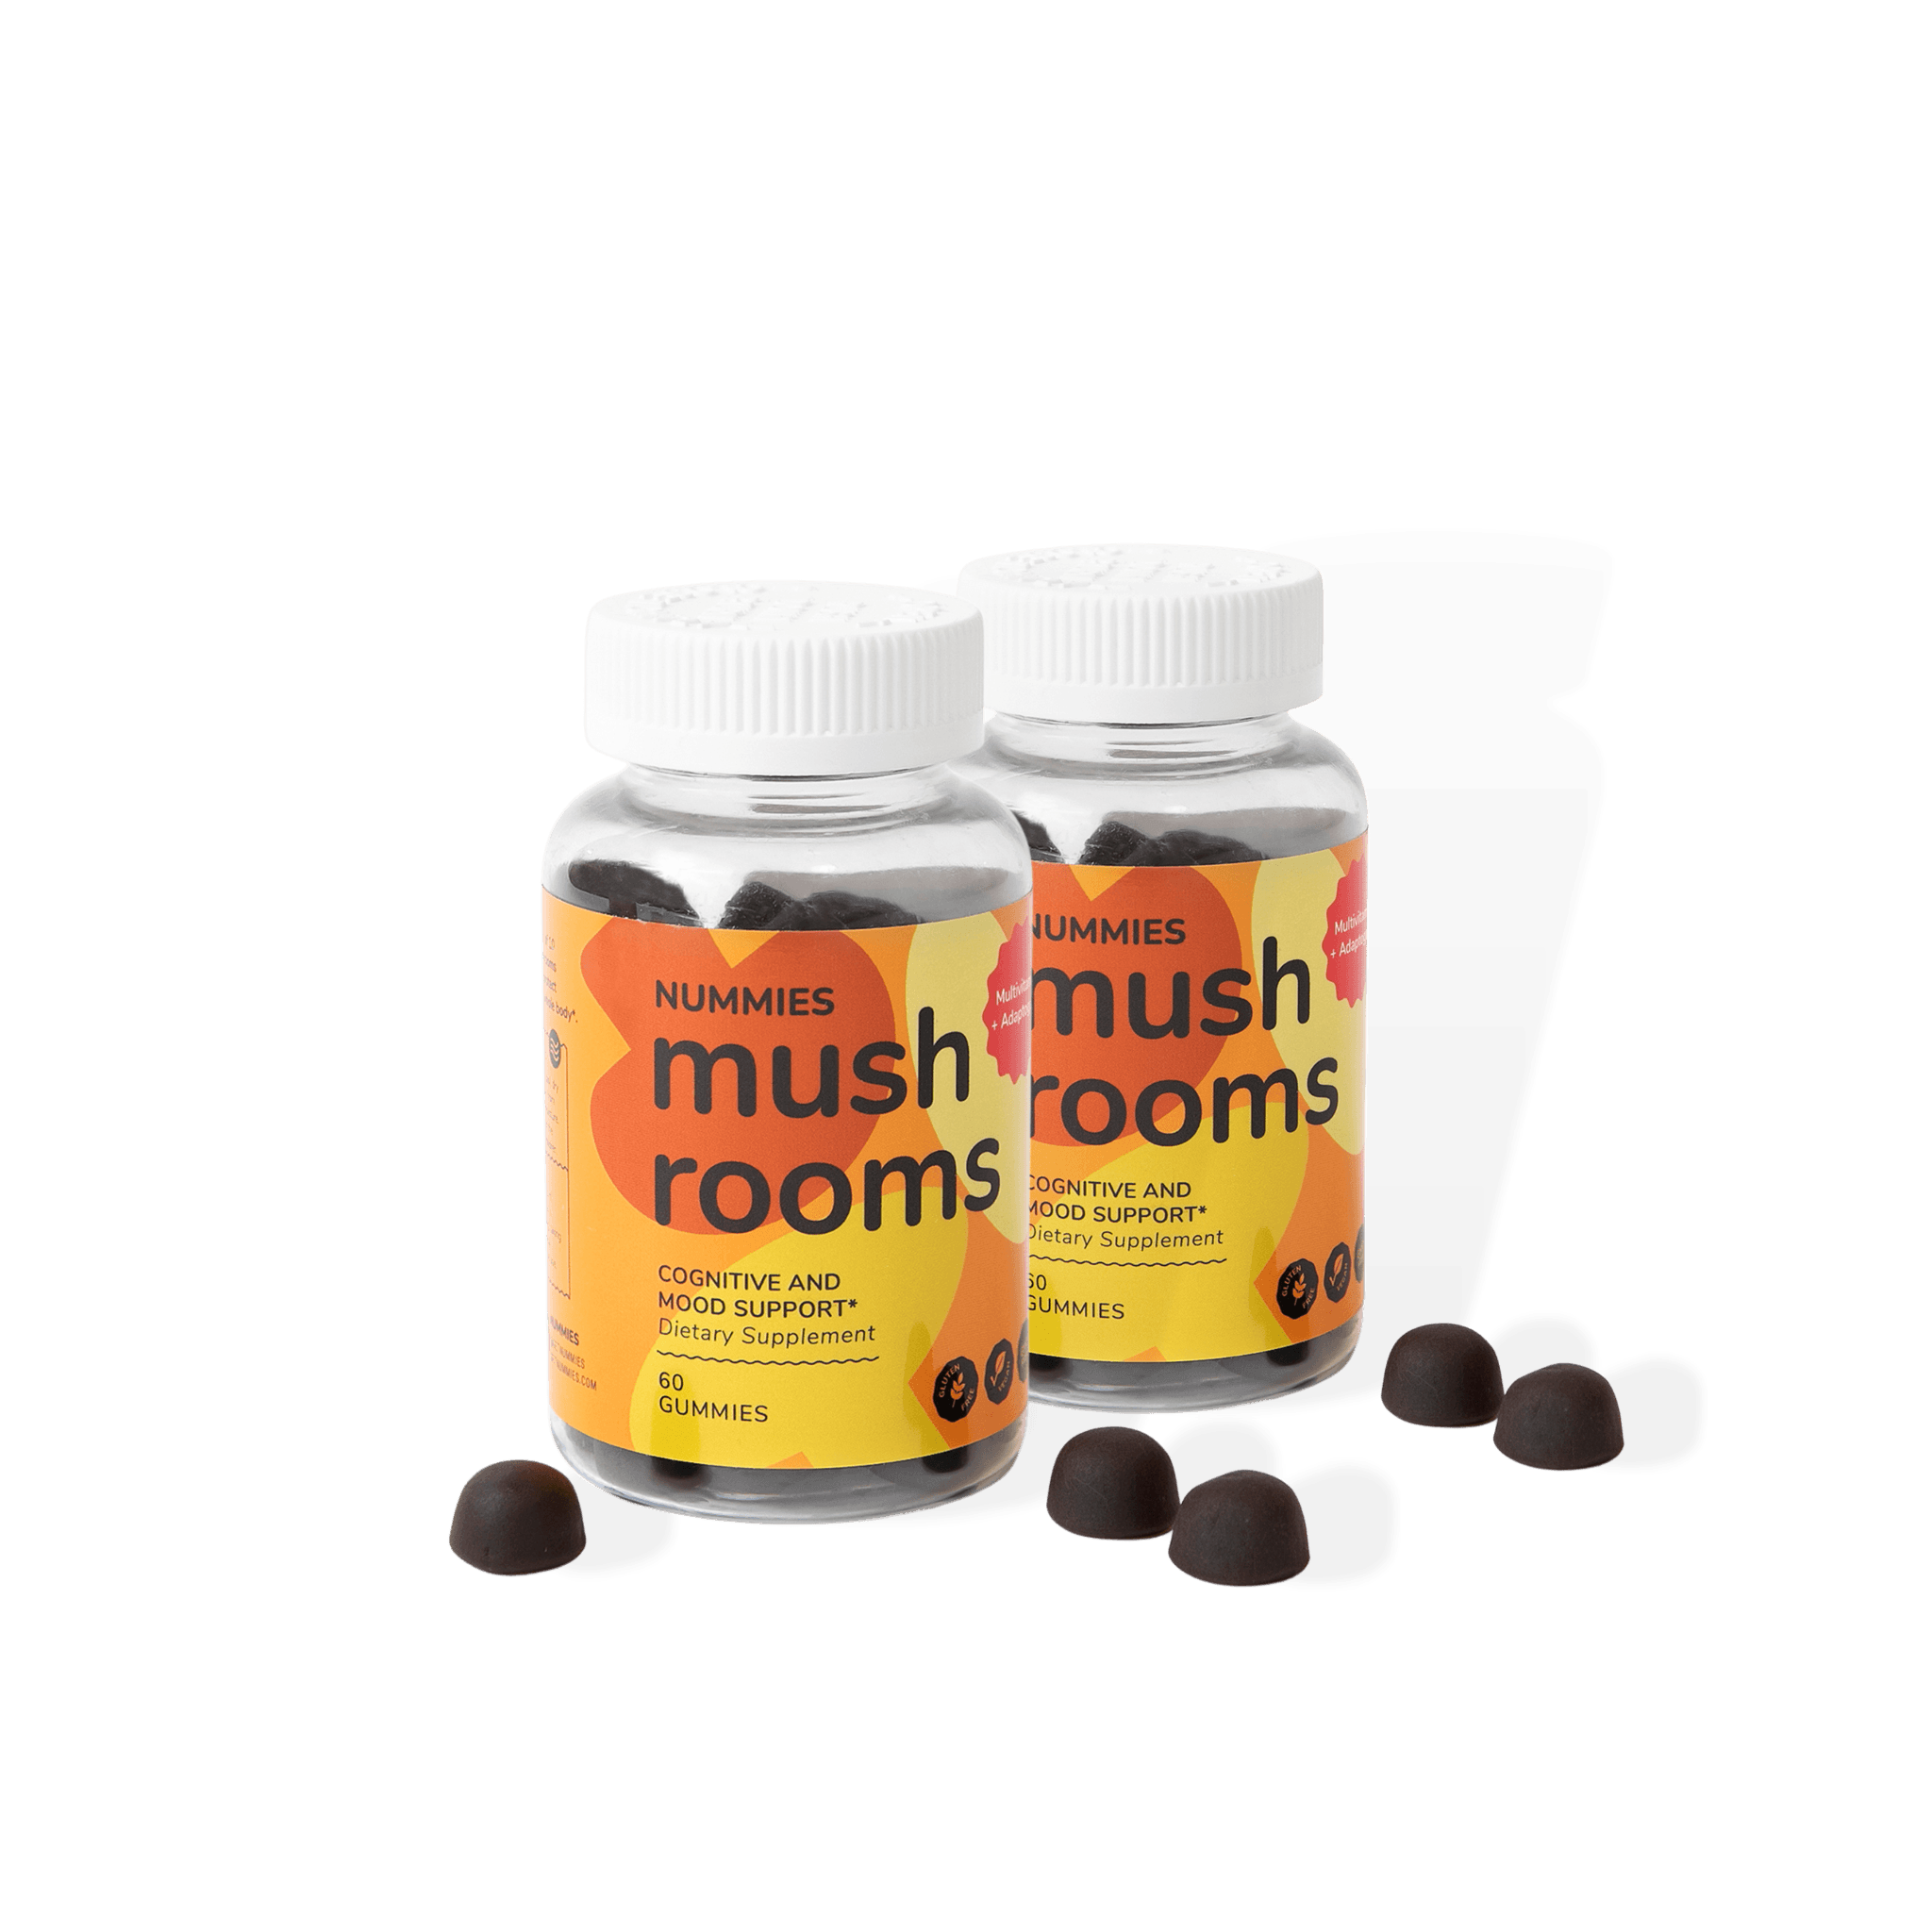 Mushroom Health Pack - Nummies